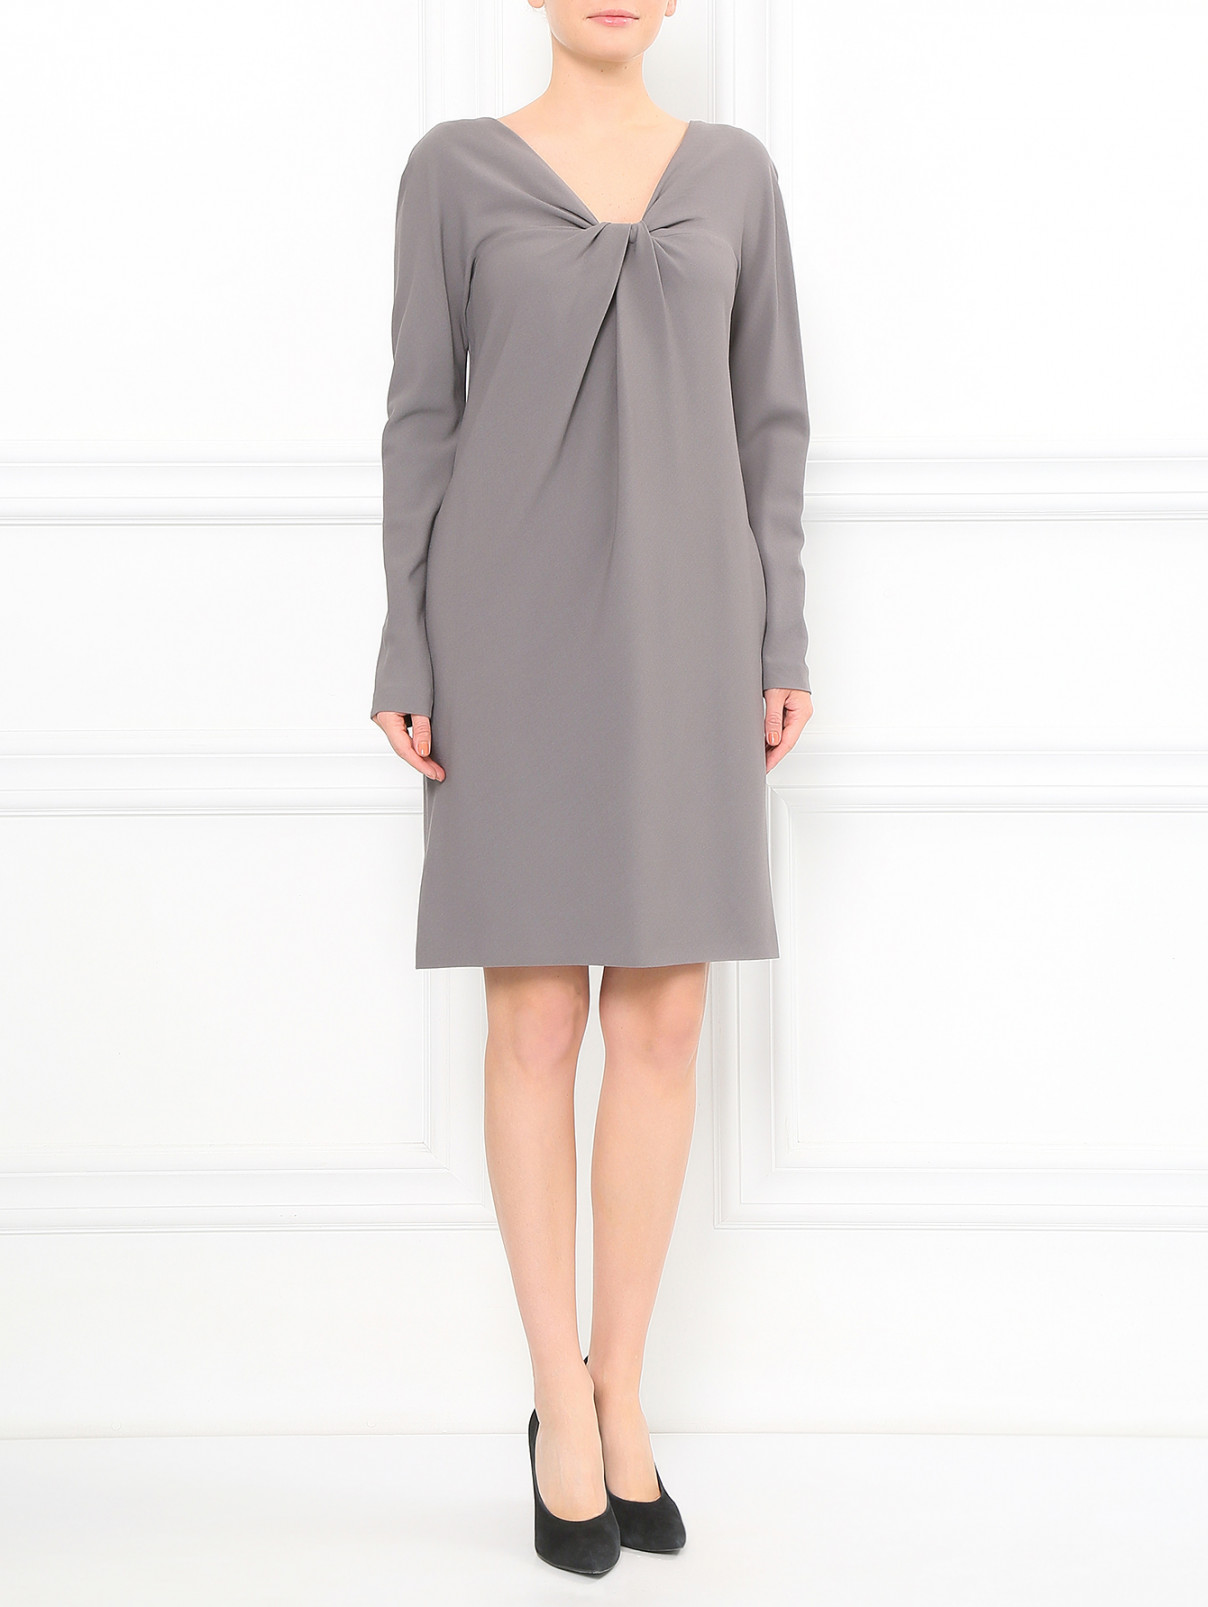 Платье-мини с декоративной драпировкой Alberta Ferretti  –  Модель Общий вид  – Цвет:  Серый